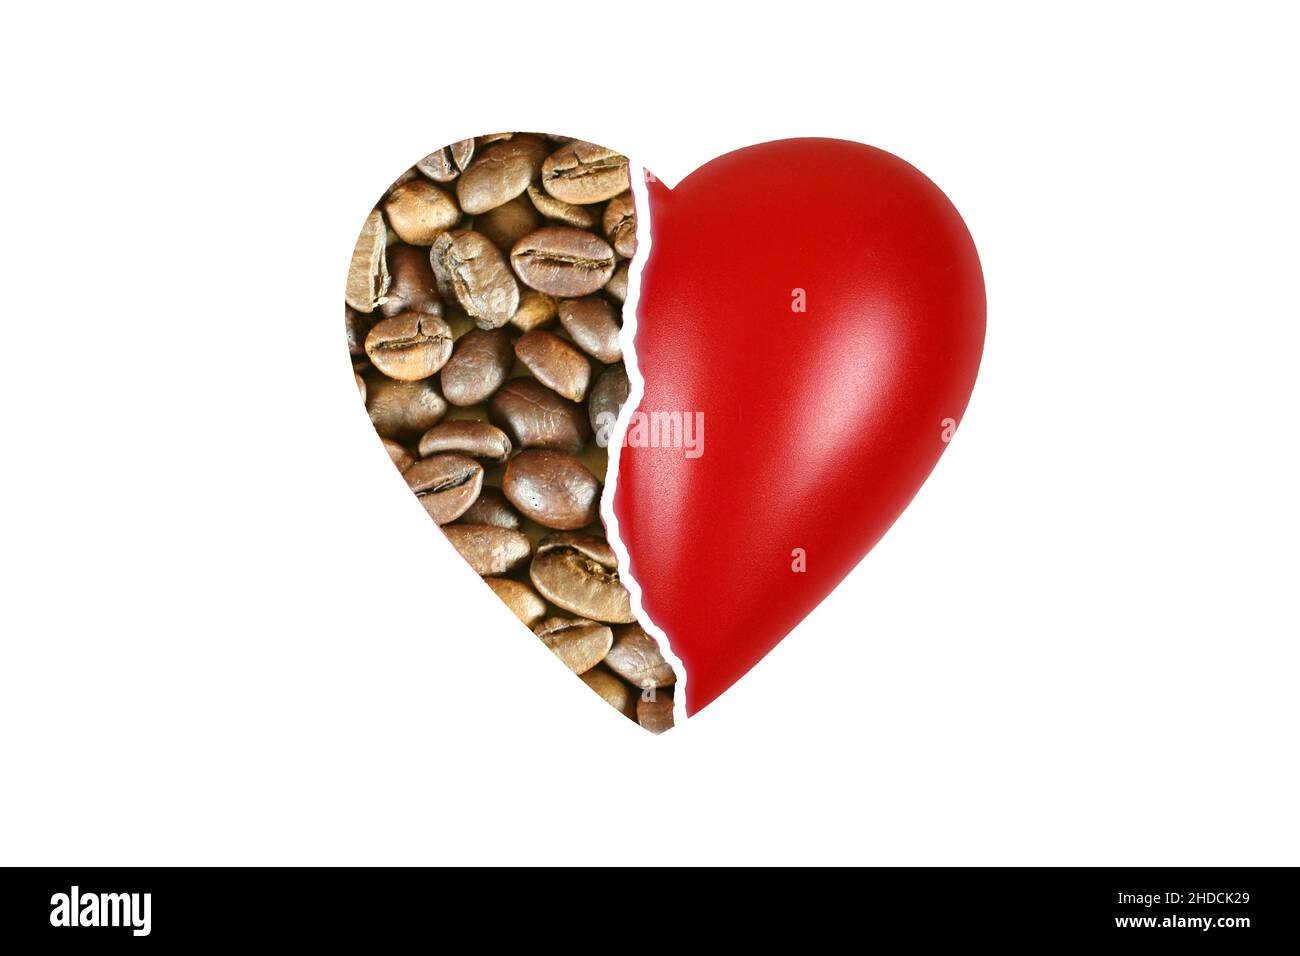 Rotes Herz, organo, Gesundheit, Körperteil, Gebrochenes Herz, zu viel Kaffee, Coffein, Herzprobleme, Foto Stock